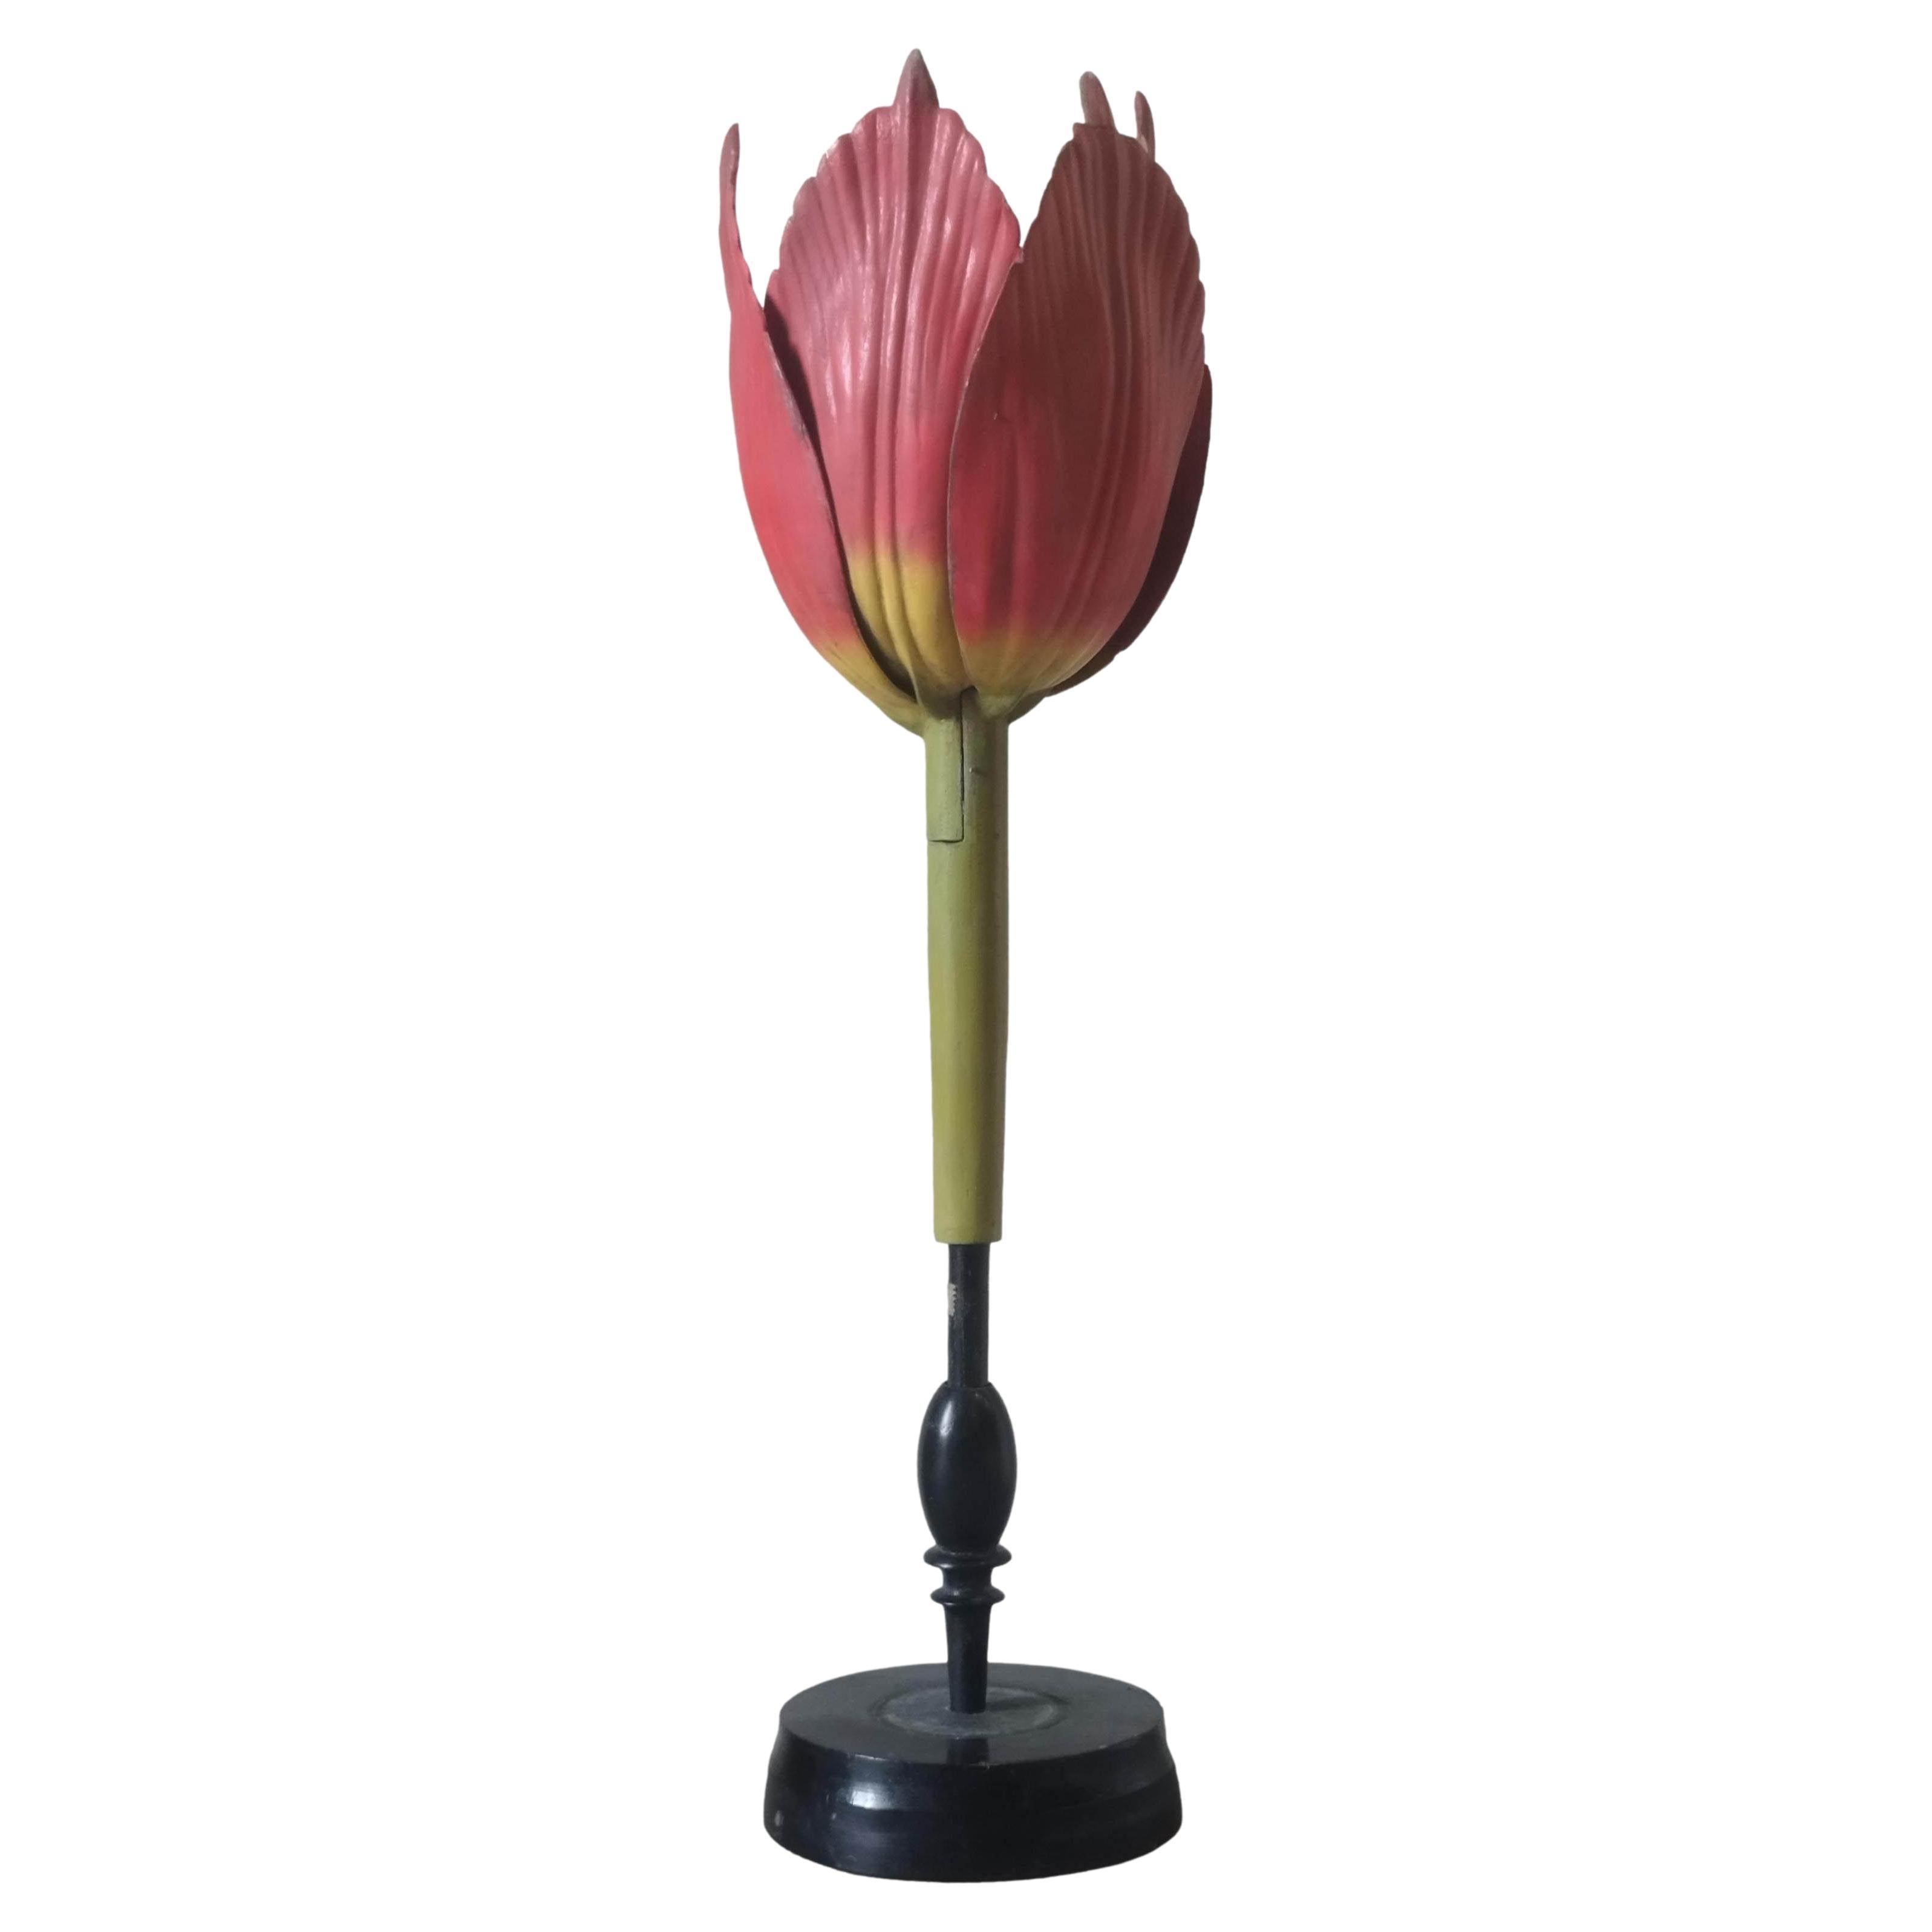 Robert Brendel's Botanical Model "Tulip Generiana", Germany 1900s For Sale